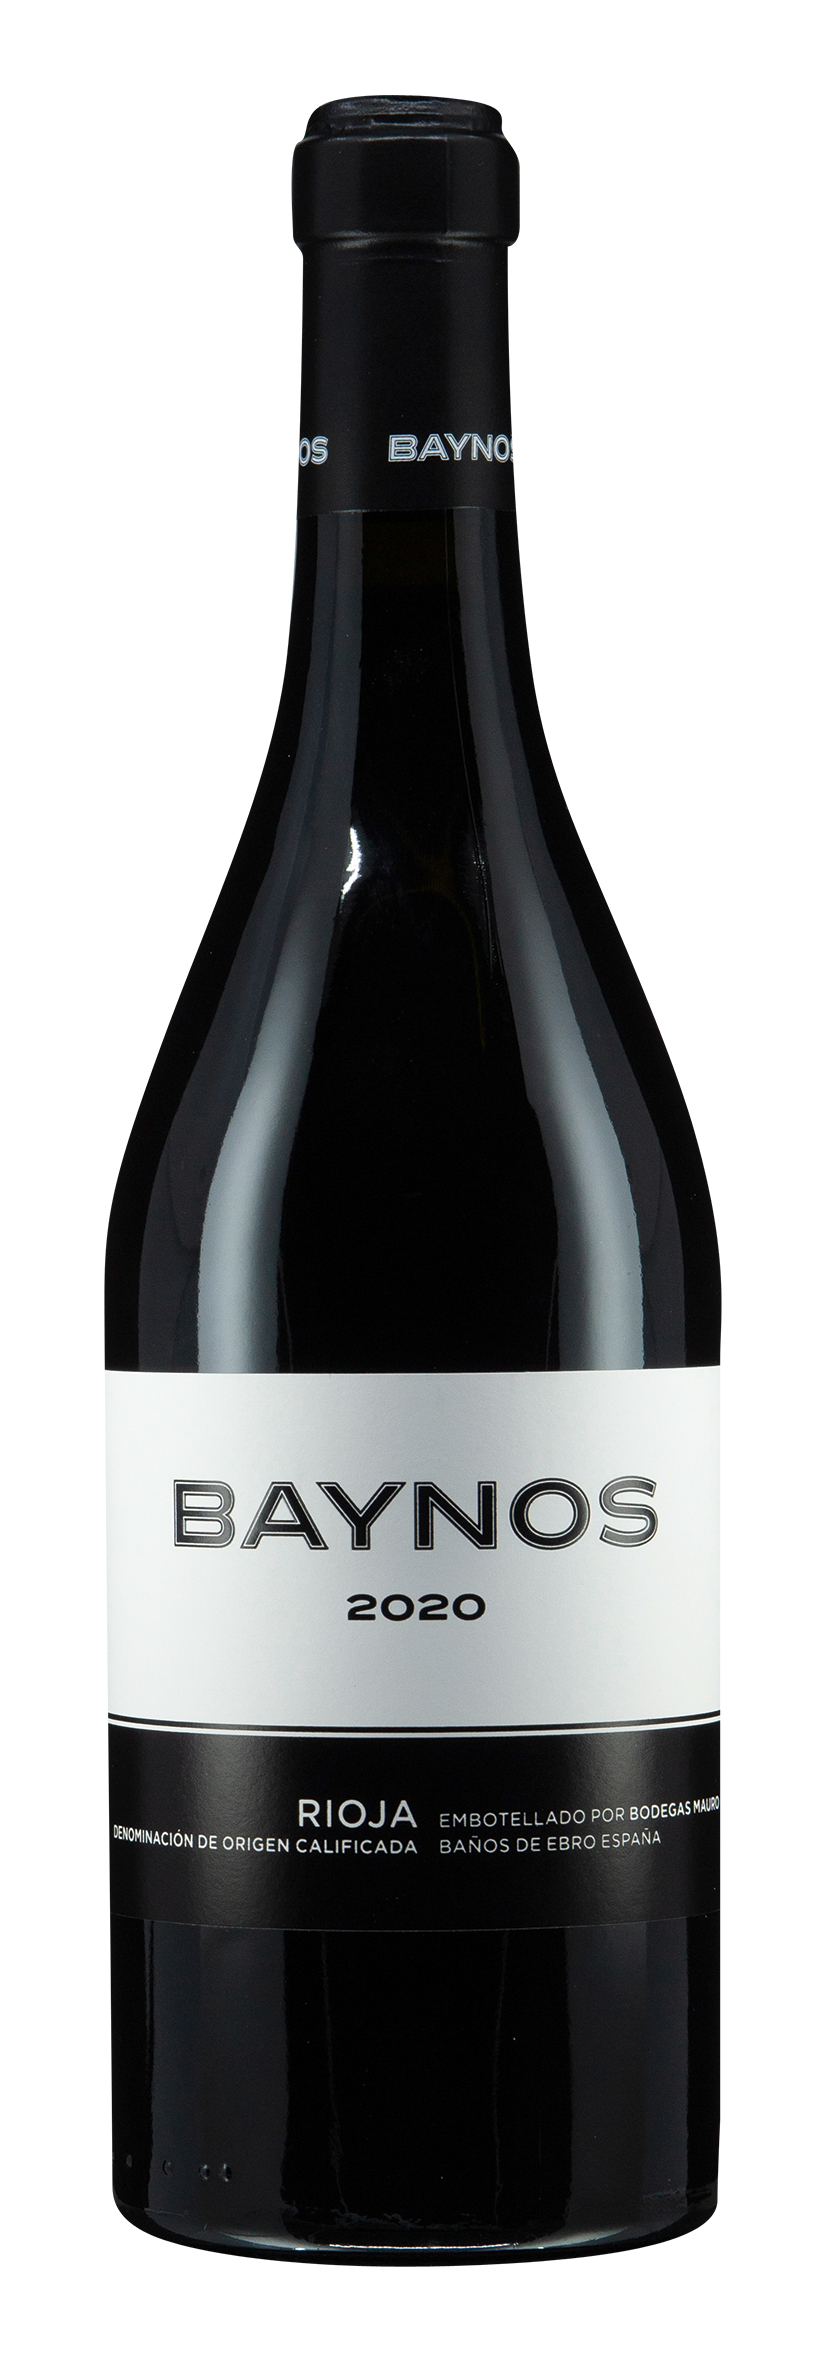 Rioja DOCa Baynos 2020